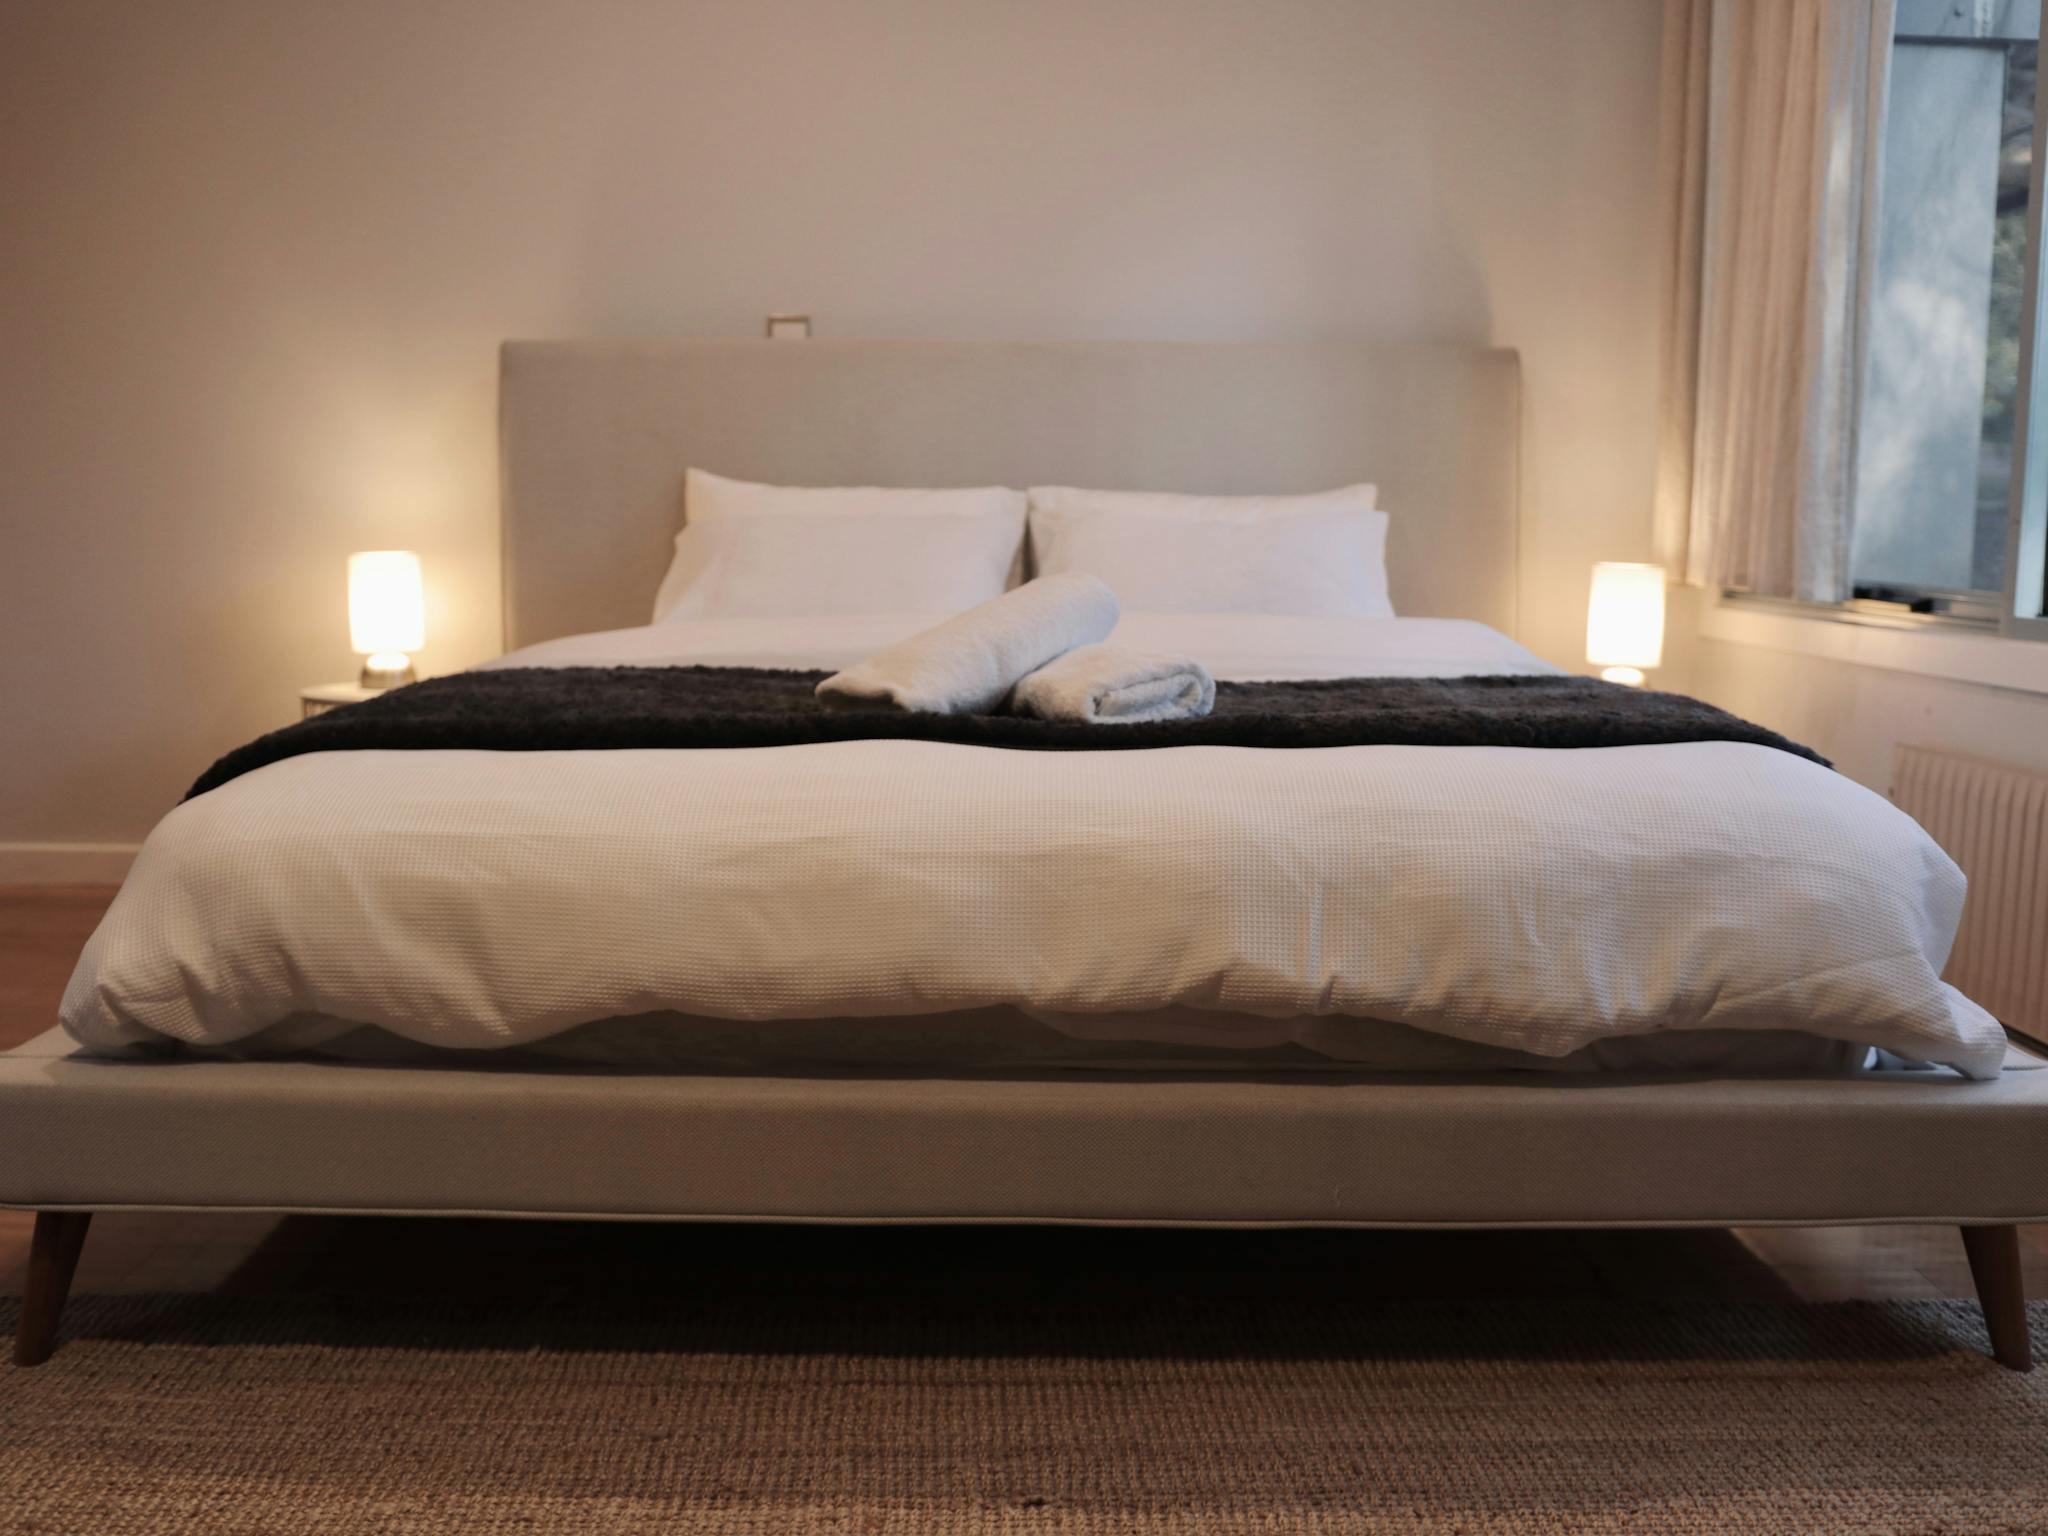 King bed master bedroom ensuite accommodation airbnb designer a frame